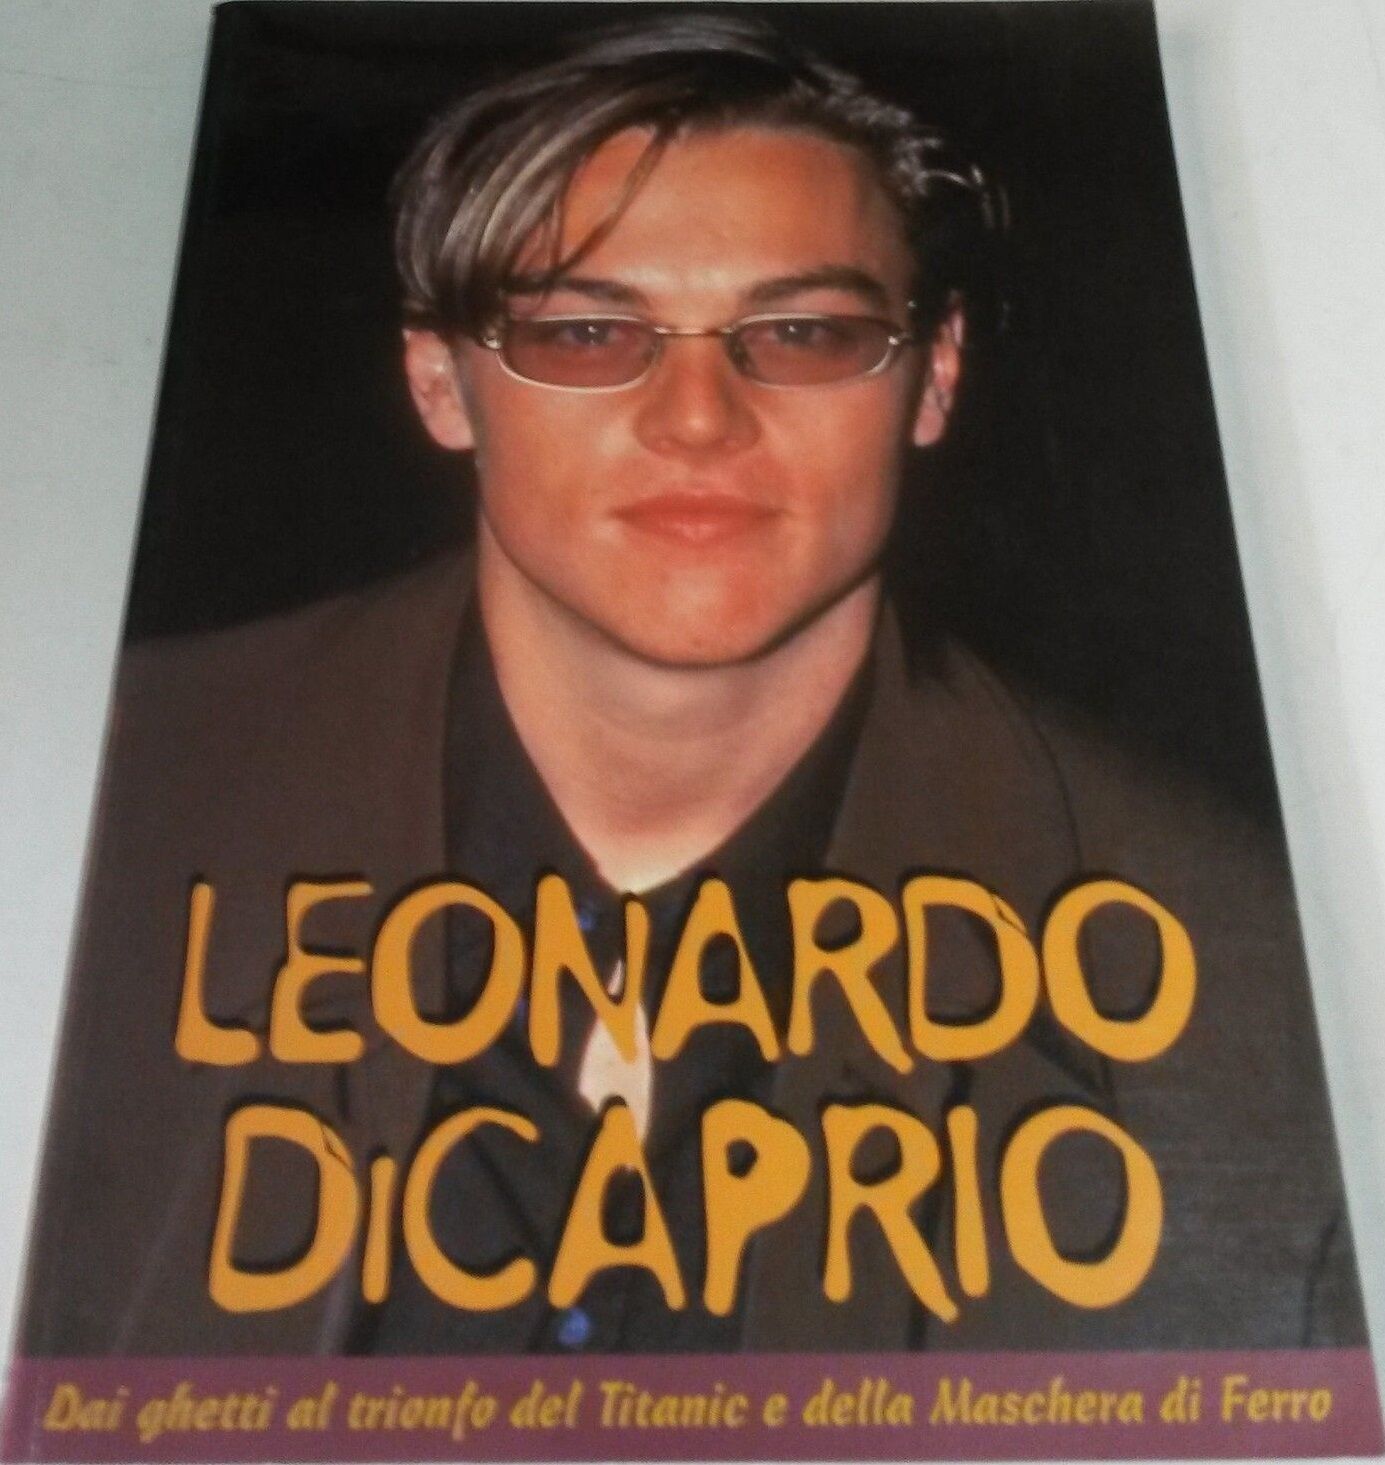 Leonardo Di Caprio. Dai ghetti al trionfo del Titanic e della Maschera di Ferro